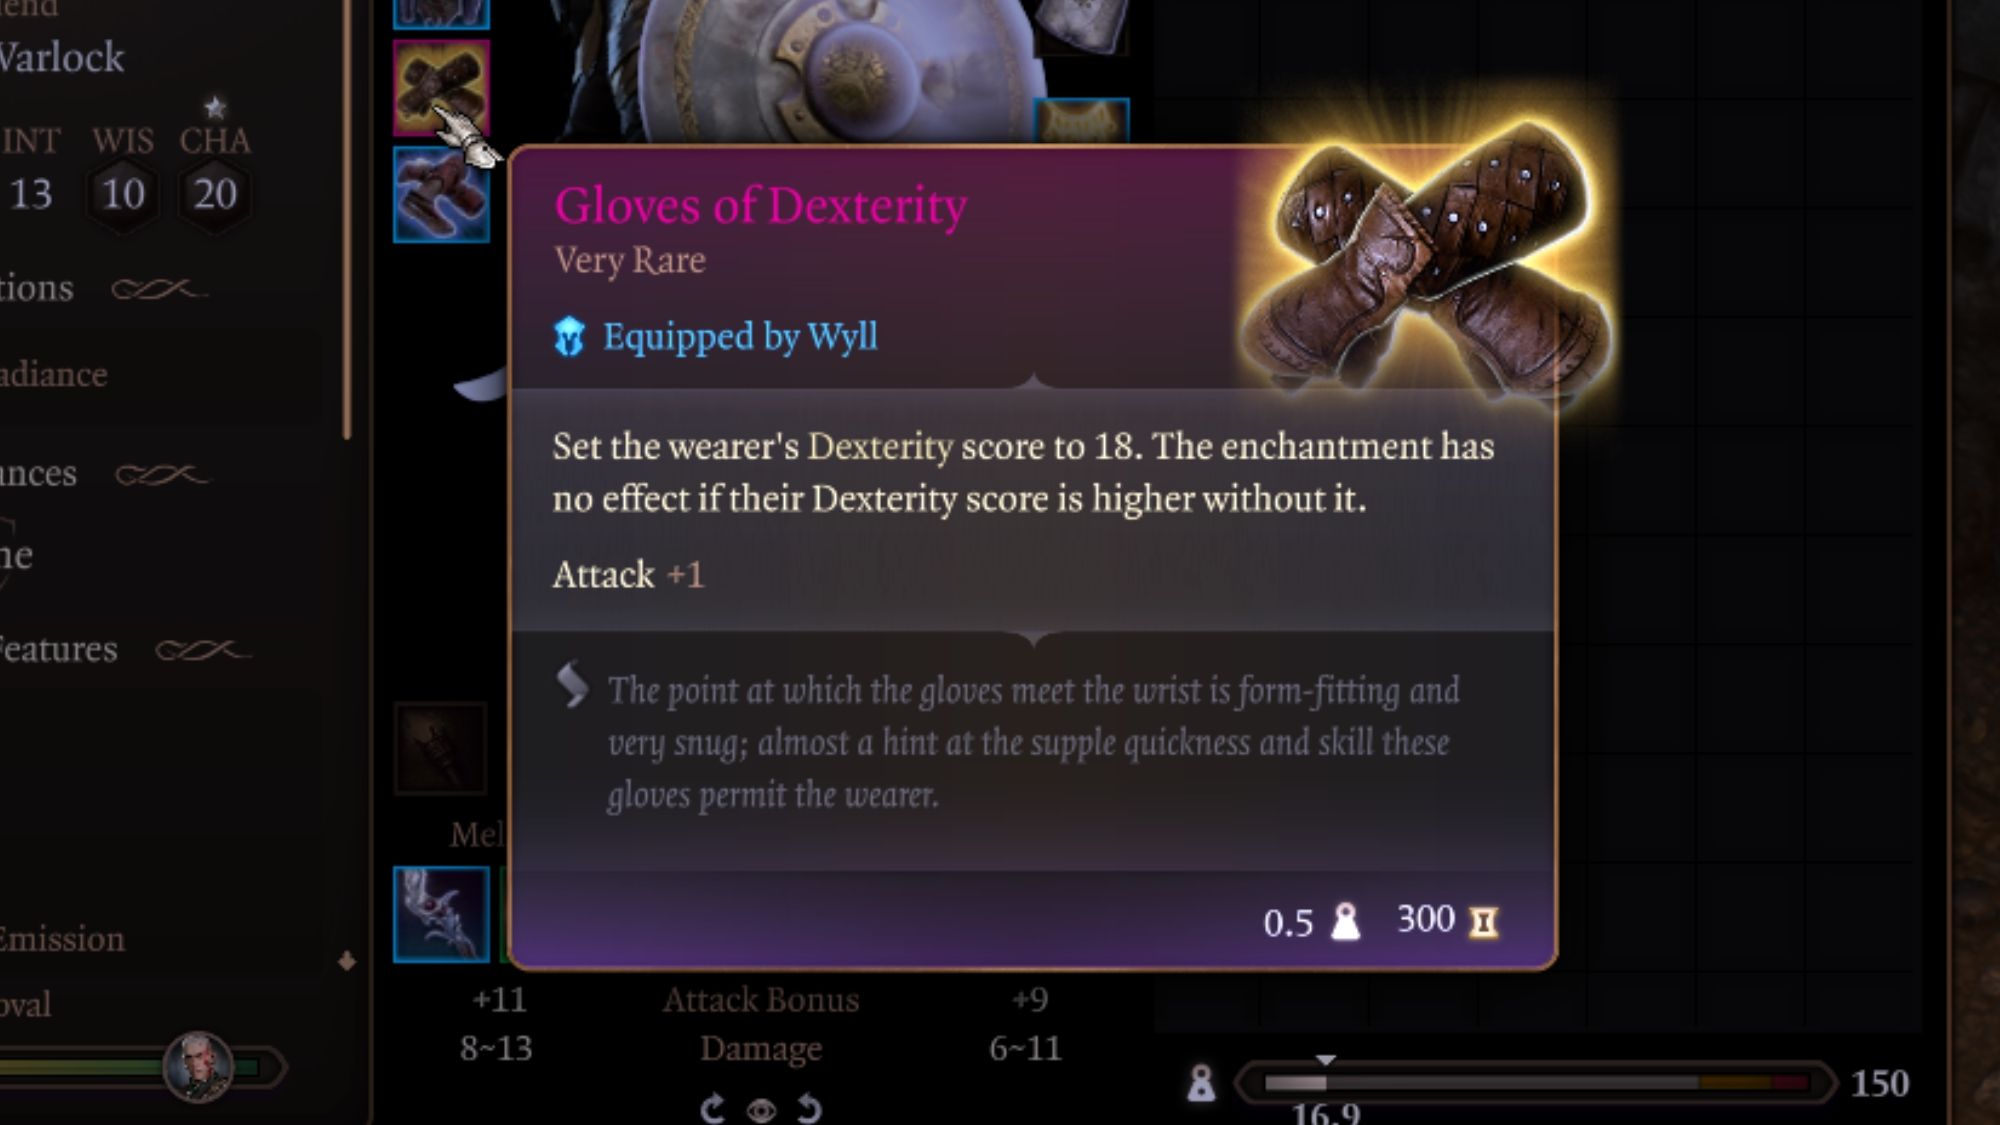 Gloves of Dexterity details in bg3